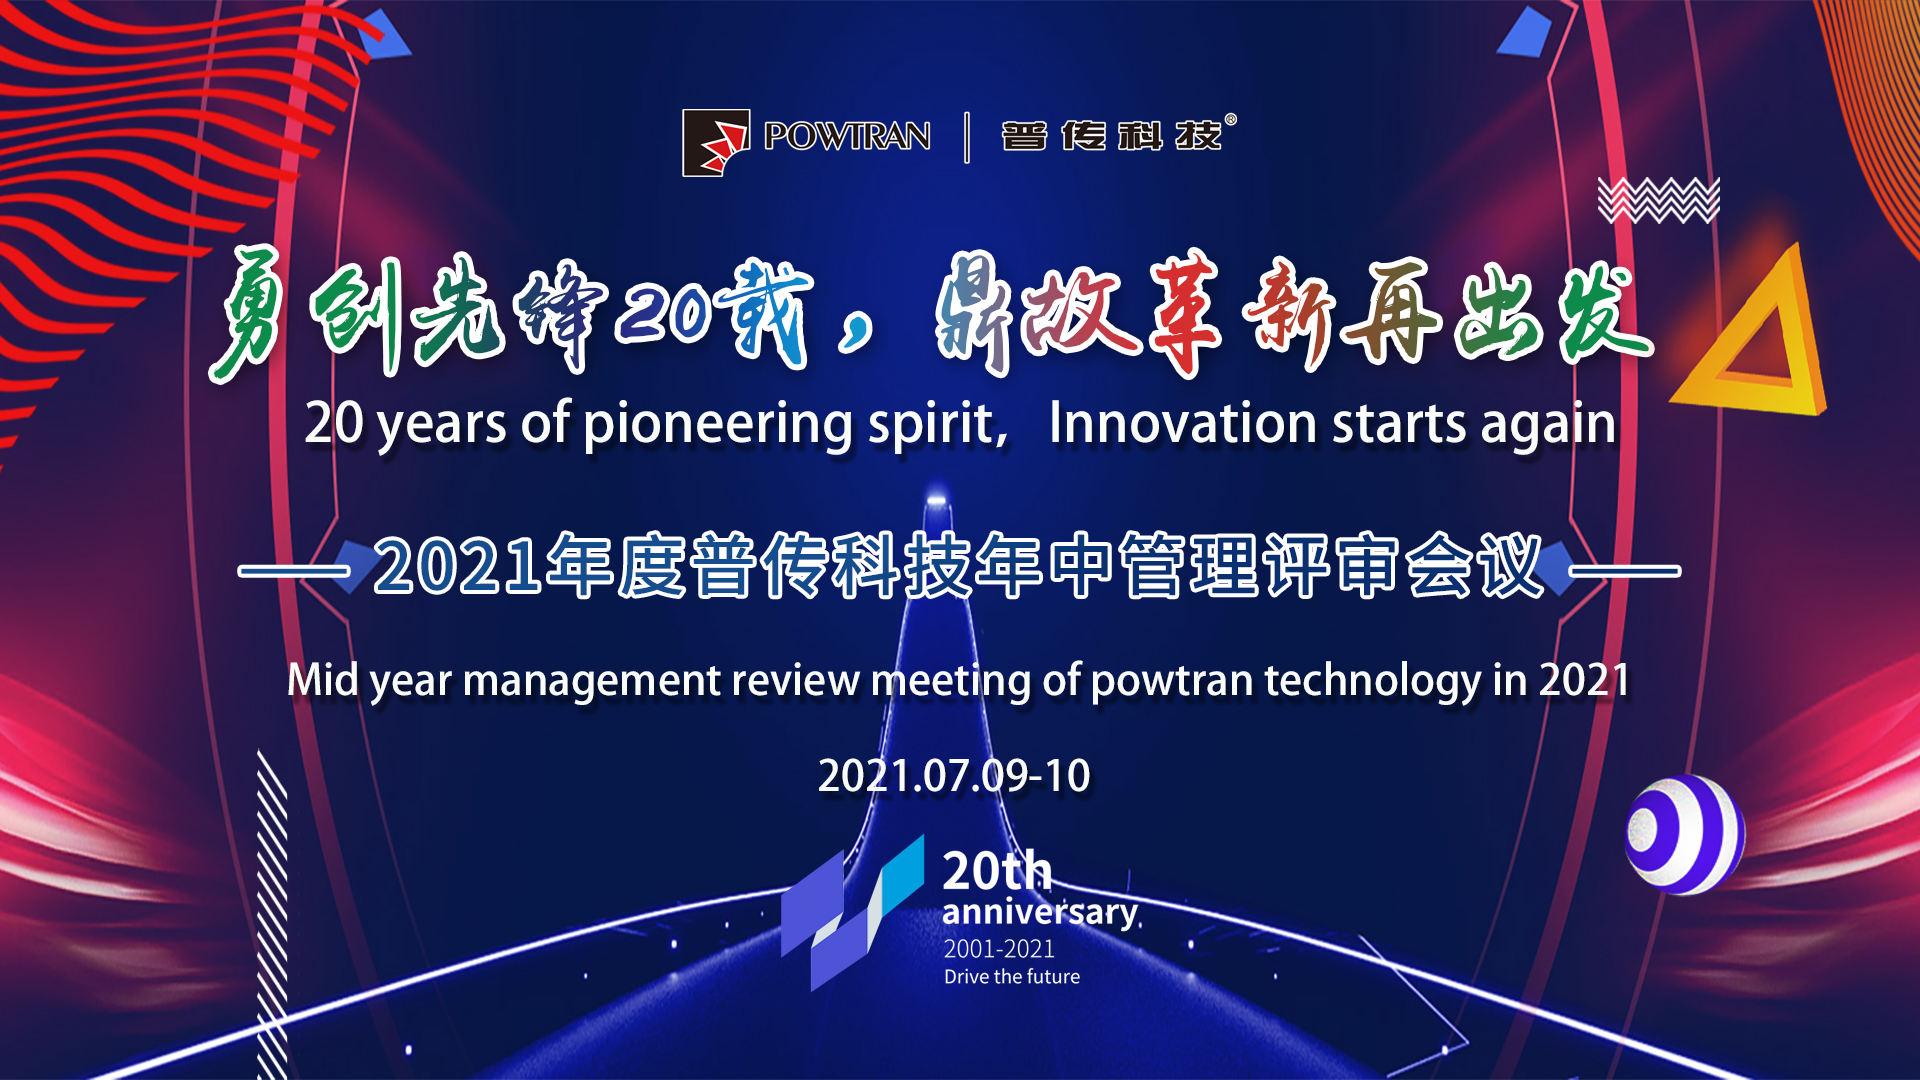 “鼎故革新再出发”——普传科技召开2021年中管理评审会议